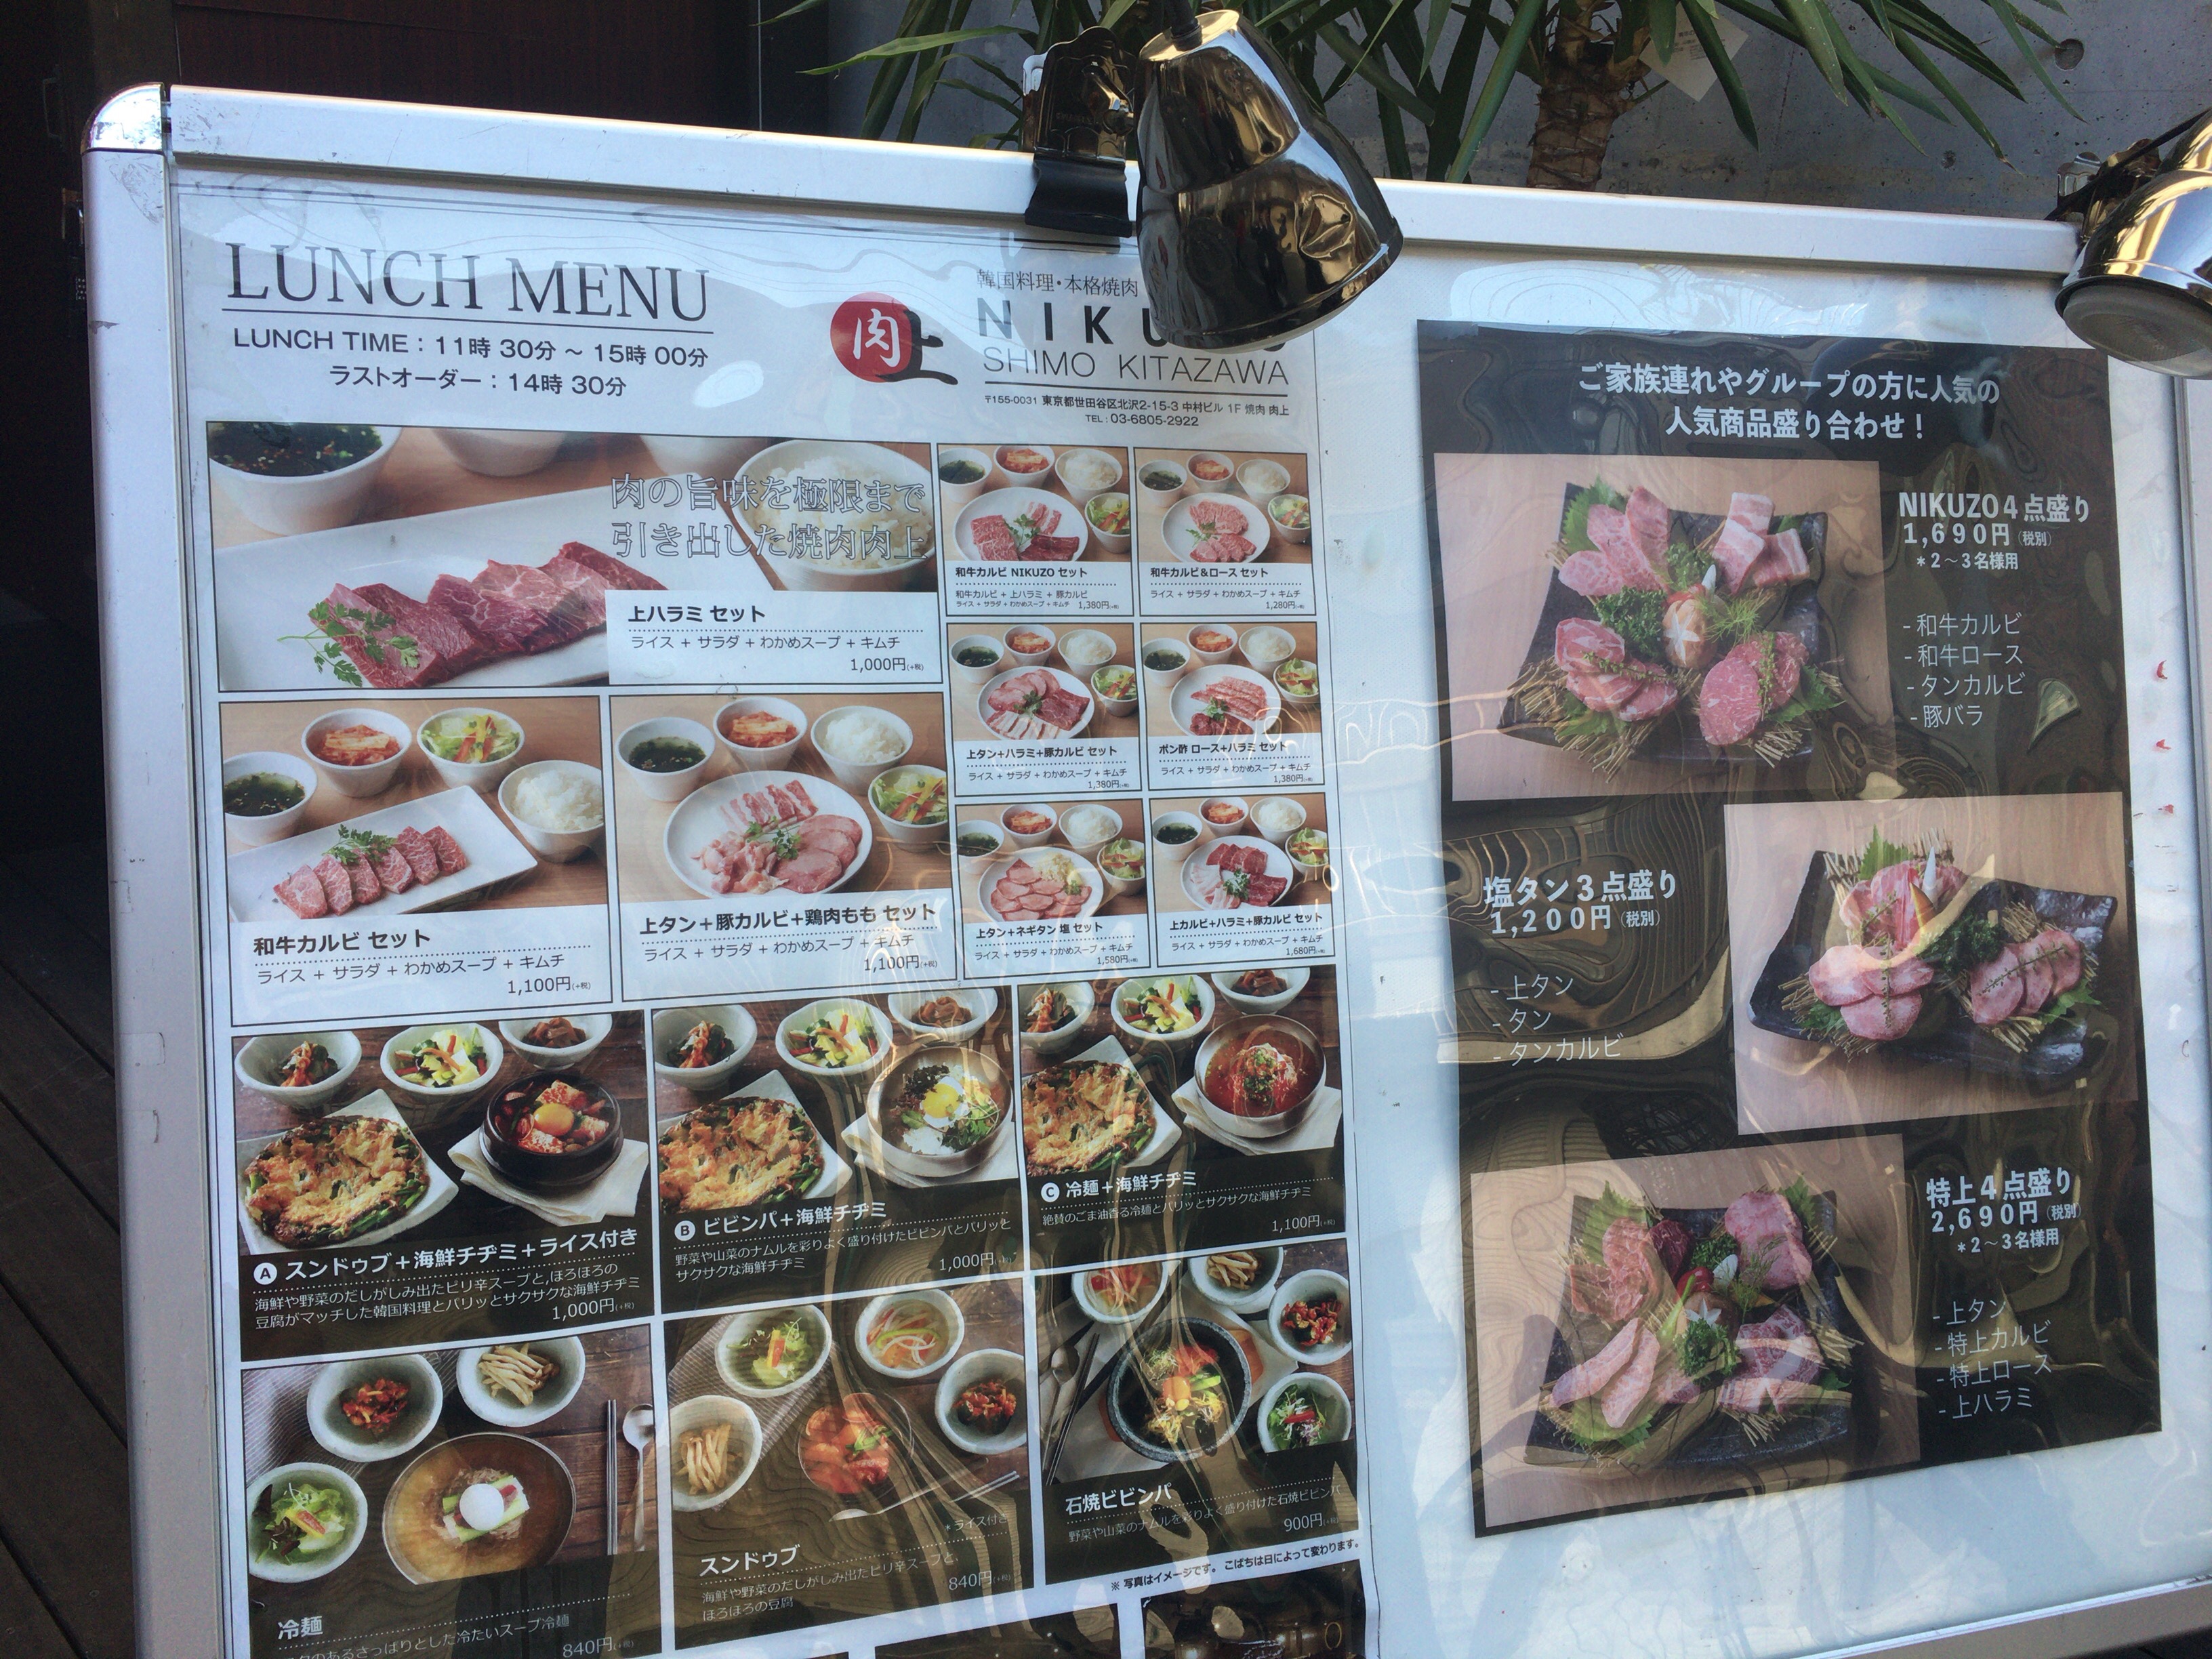 下北沢の焼肉のお店 Nikuzo で会社の人たちといい感じのランチを食べてきたぞ しのざっき